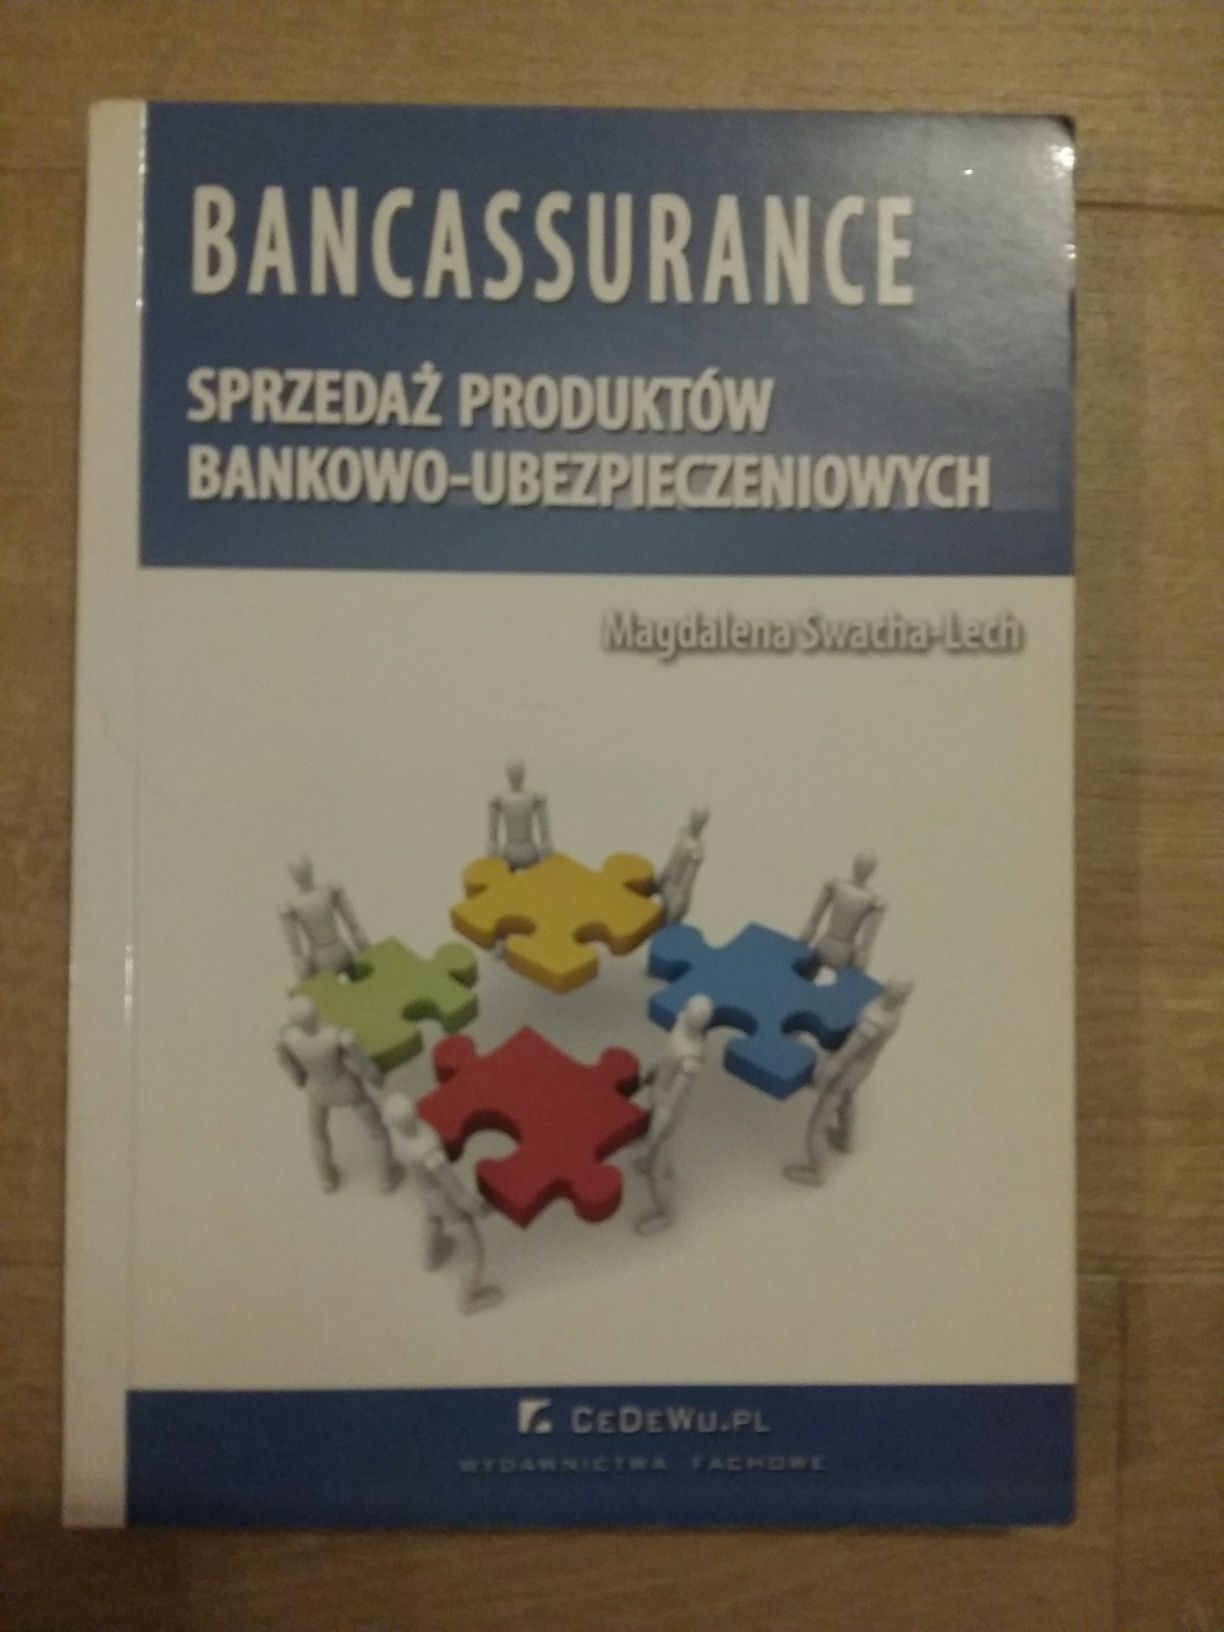 Bancassurance. Sprzedaż produktów bankowo - ubezpieczeniowych.